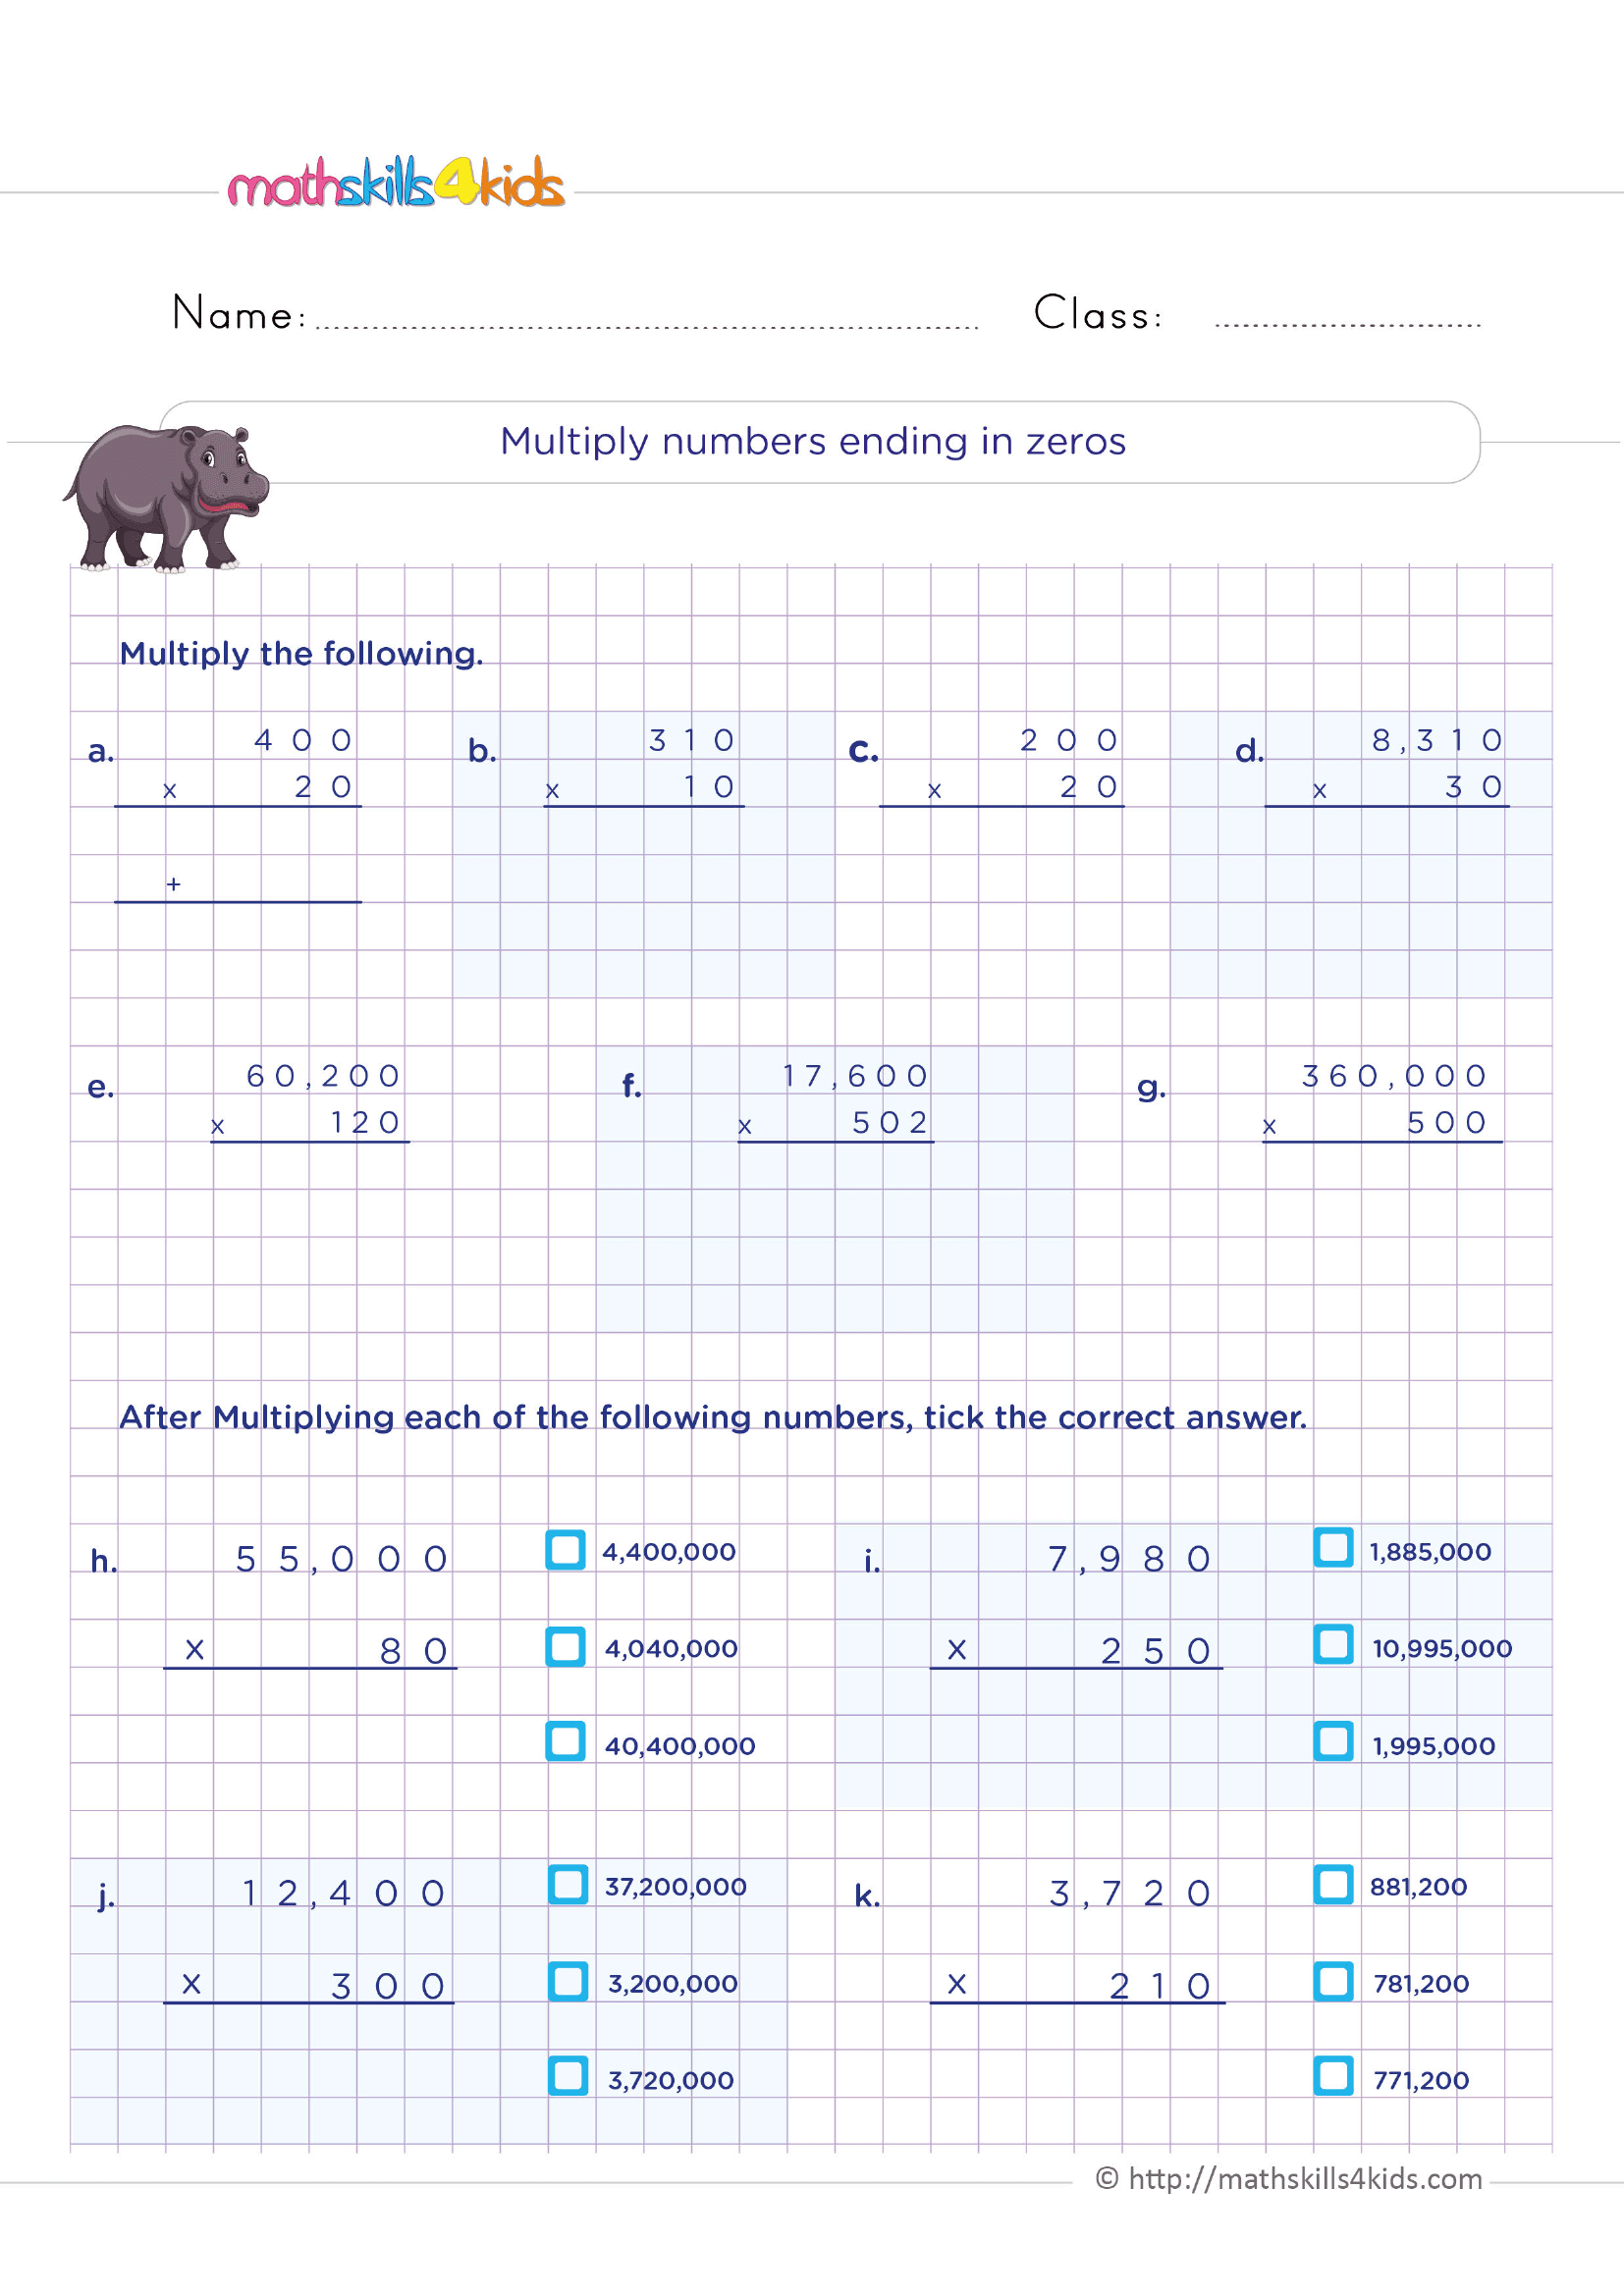 multiply-numbers-ending-in-zeros-worksheet-zone